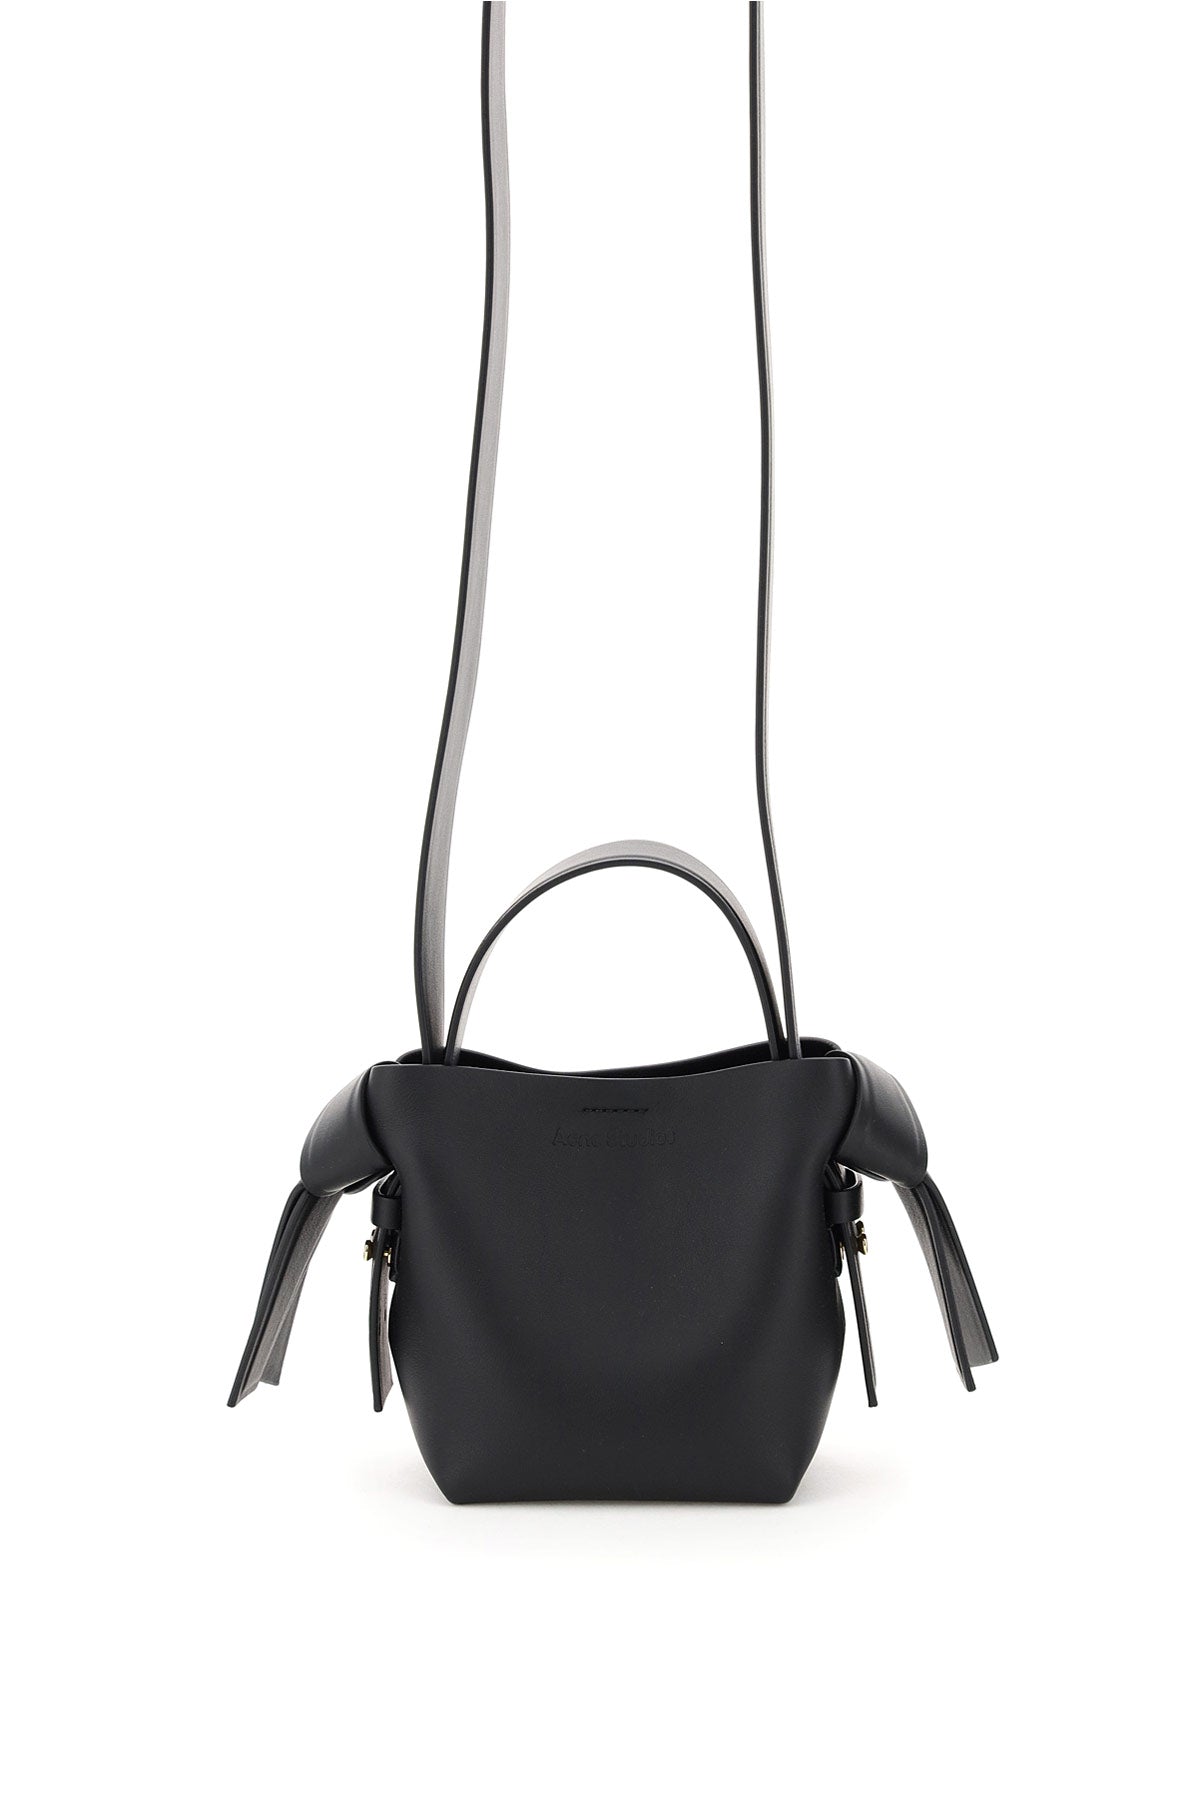 ACNE STUDIOS Black Leather Micro Musubi Tote Handbag for Women